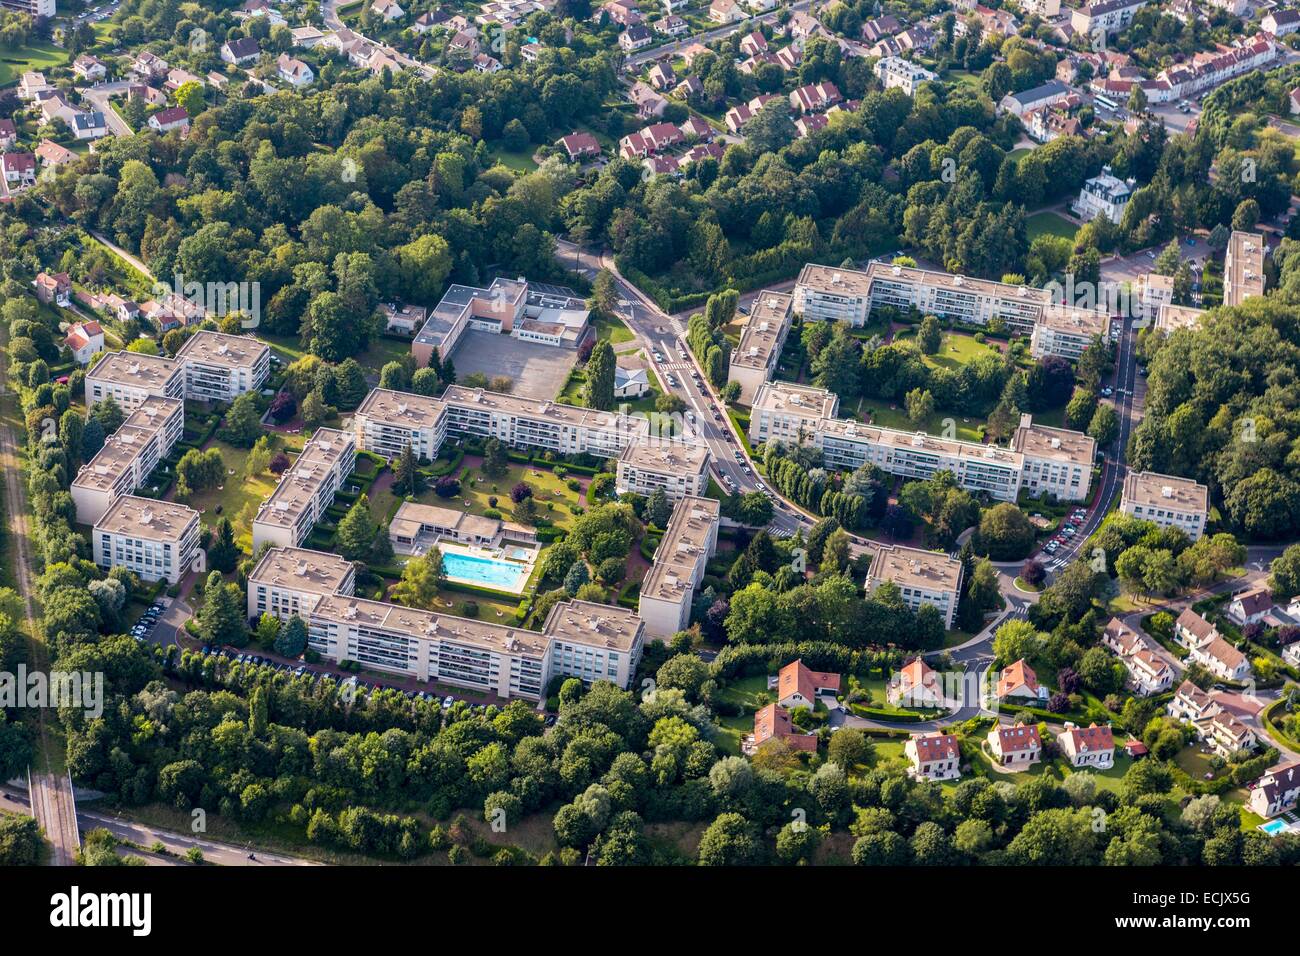 France, Hauts-de-Seine, housing complex (aerial view) Stock Photo